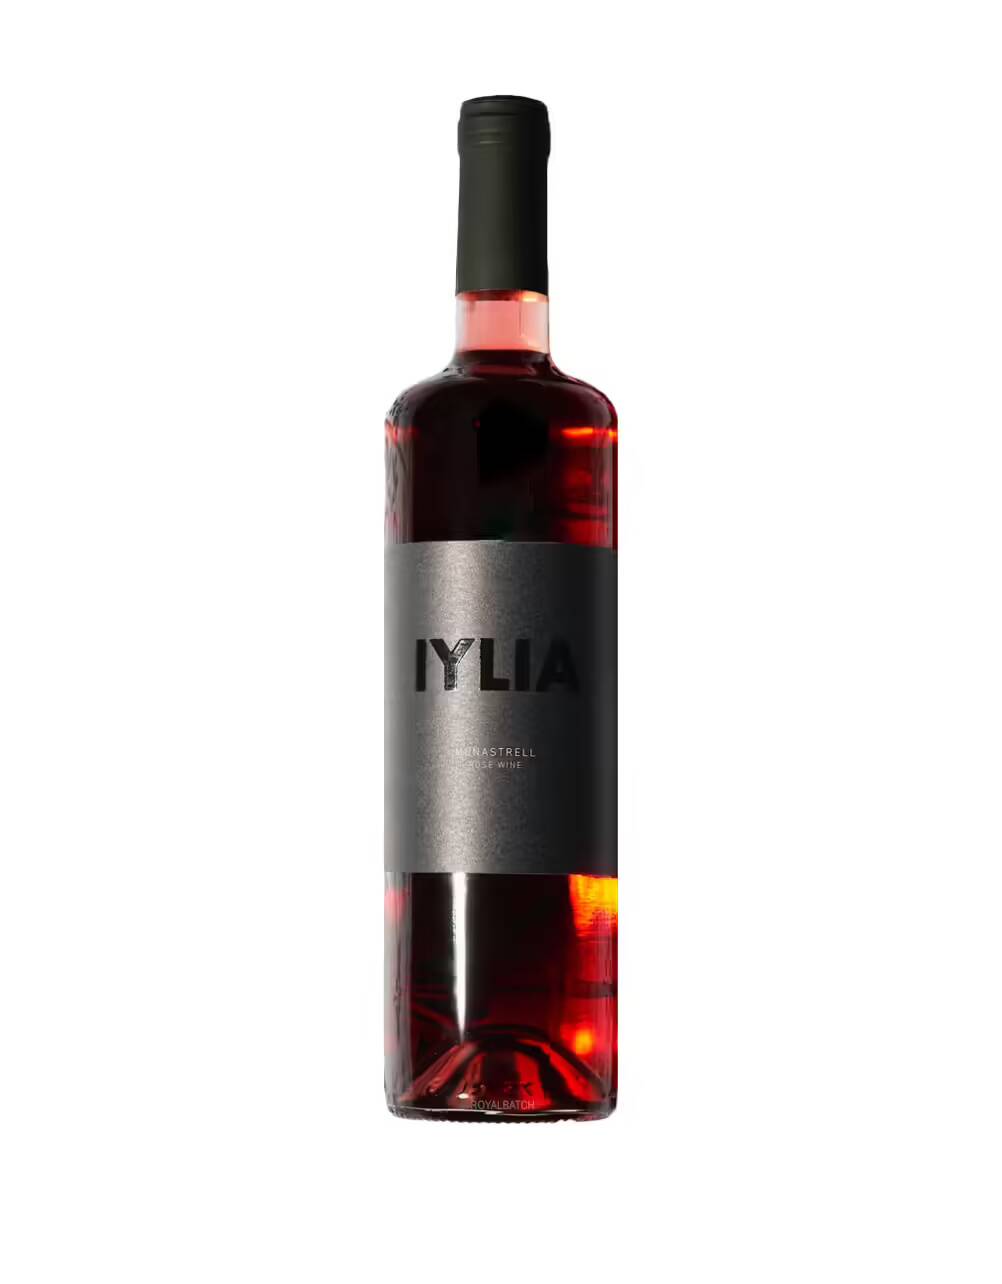 Iylia Monastrell 2020 Rose Wine